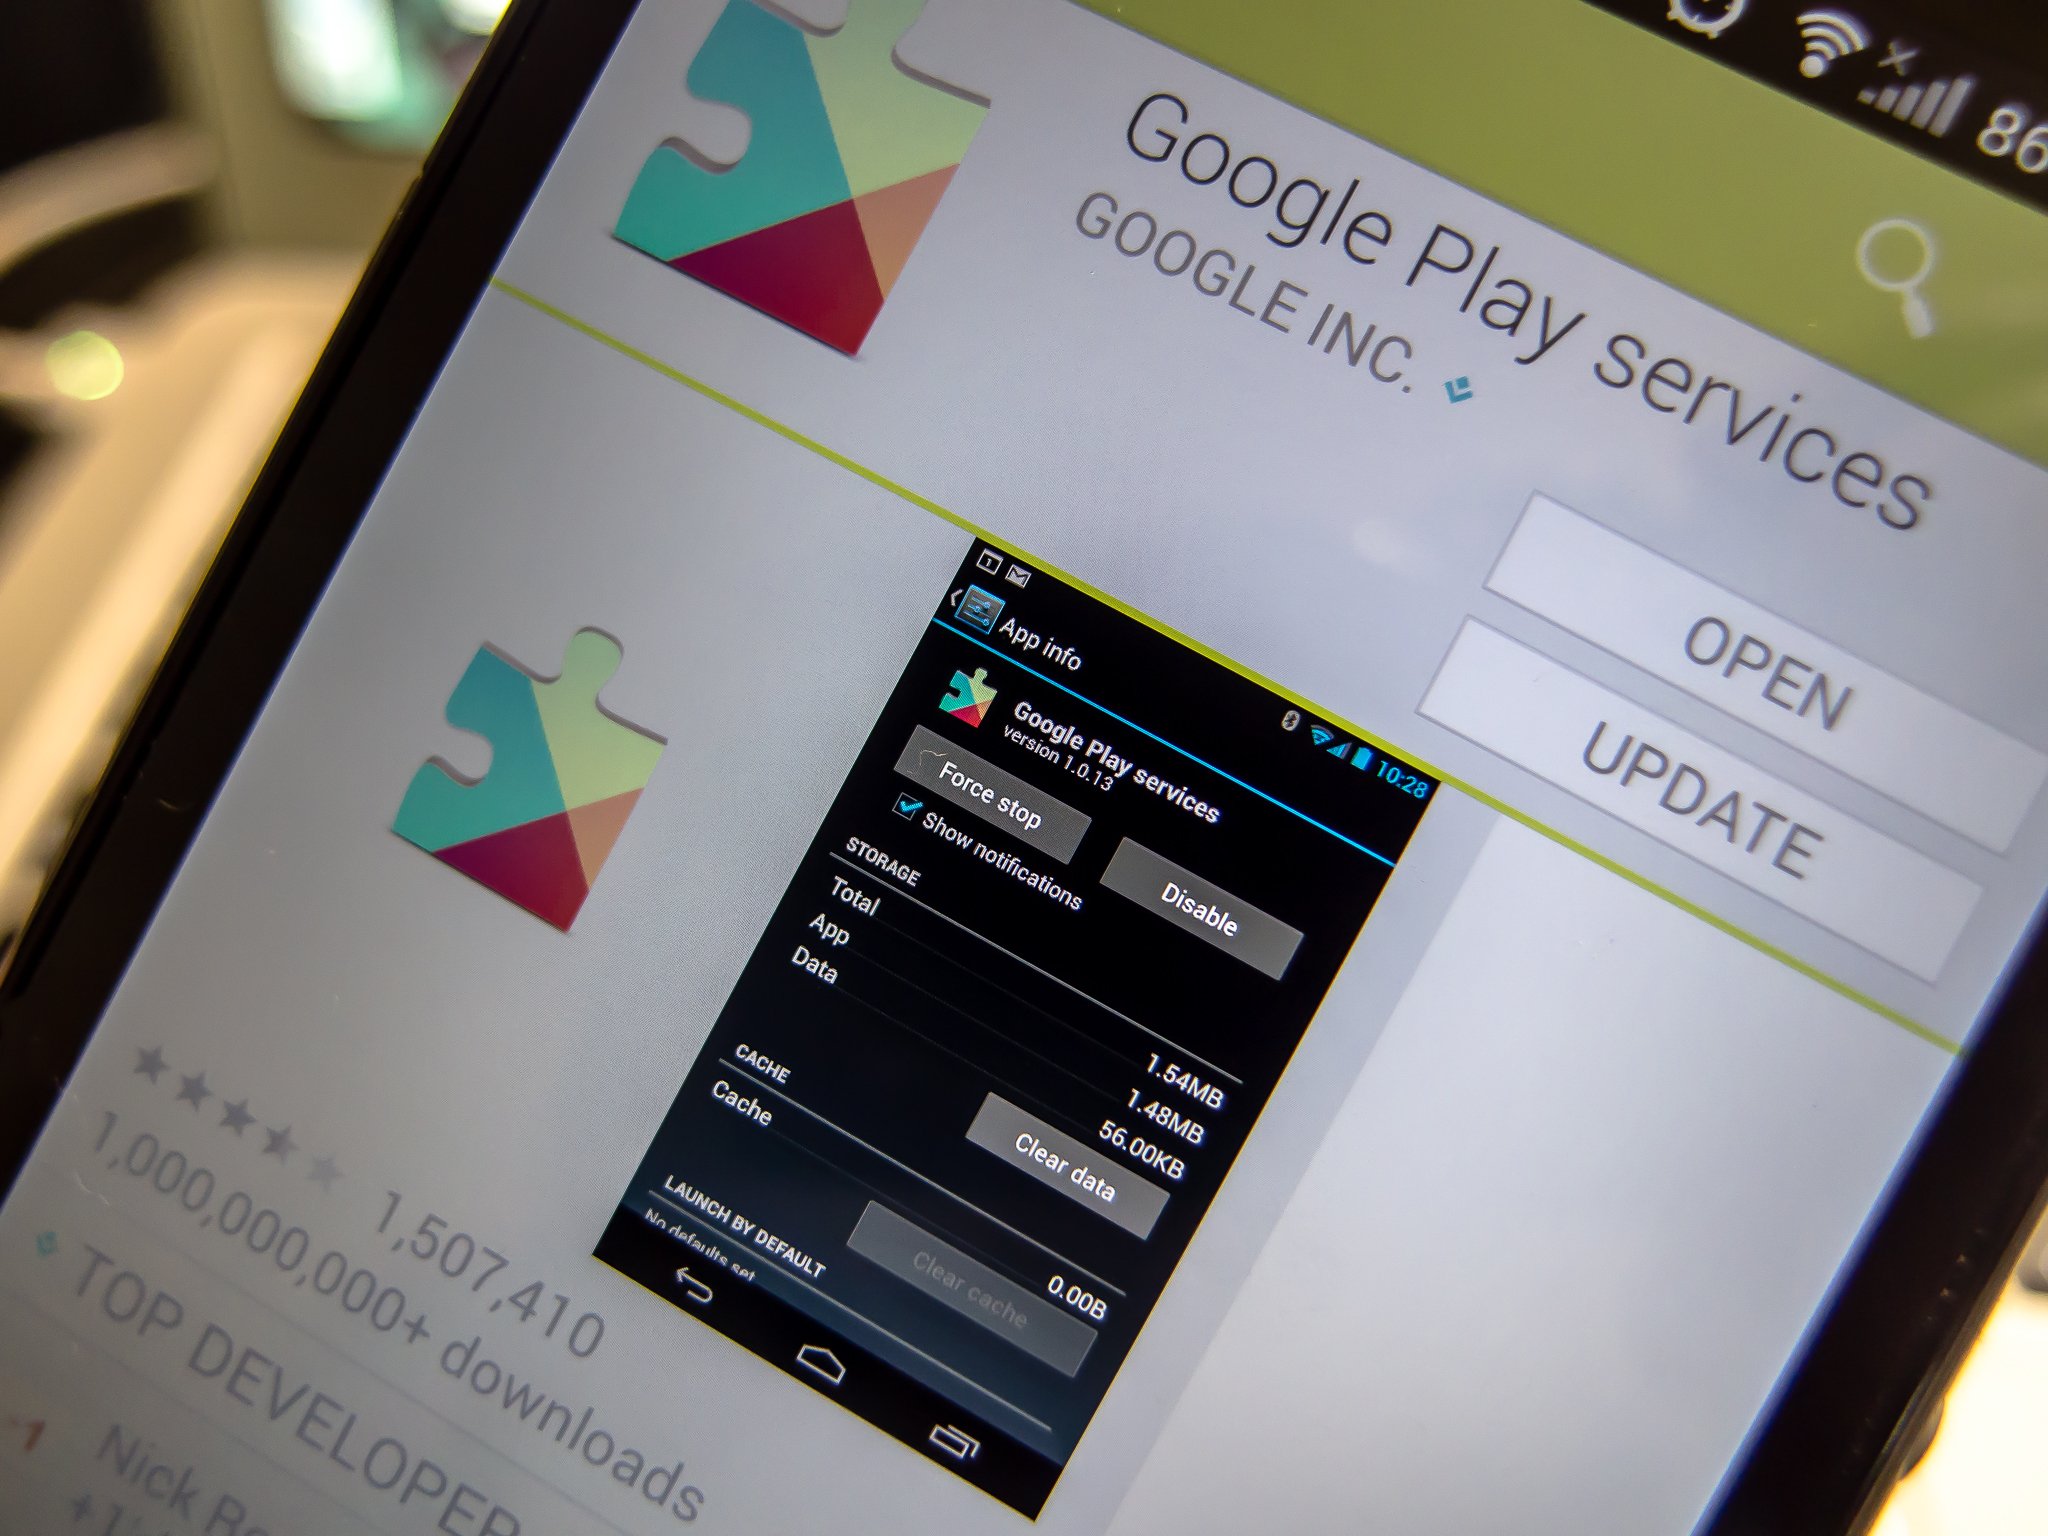 Гугл плей для смарт тв. Google Play. Сервисы гугл плей. Обновить гугл плей. В приложении "сервисы Google Play".